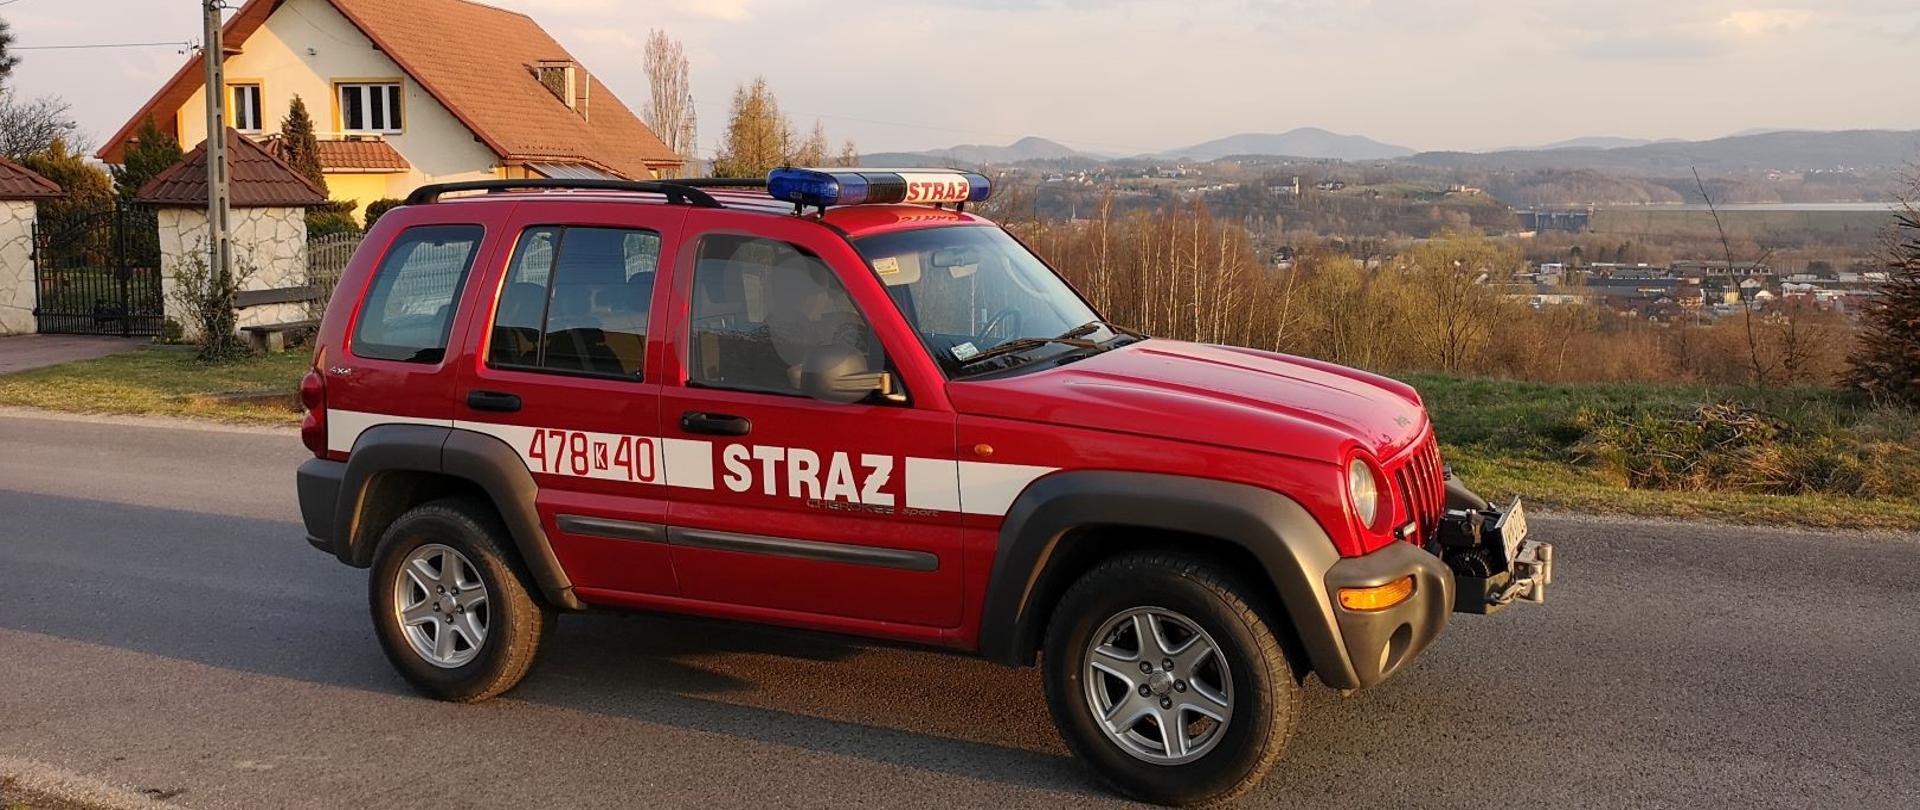 Lekki samochód operacyjny Jeep. W tle zdjęcia panorama gminy Dobczyce.